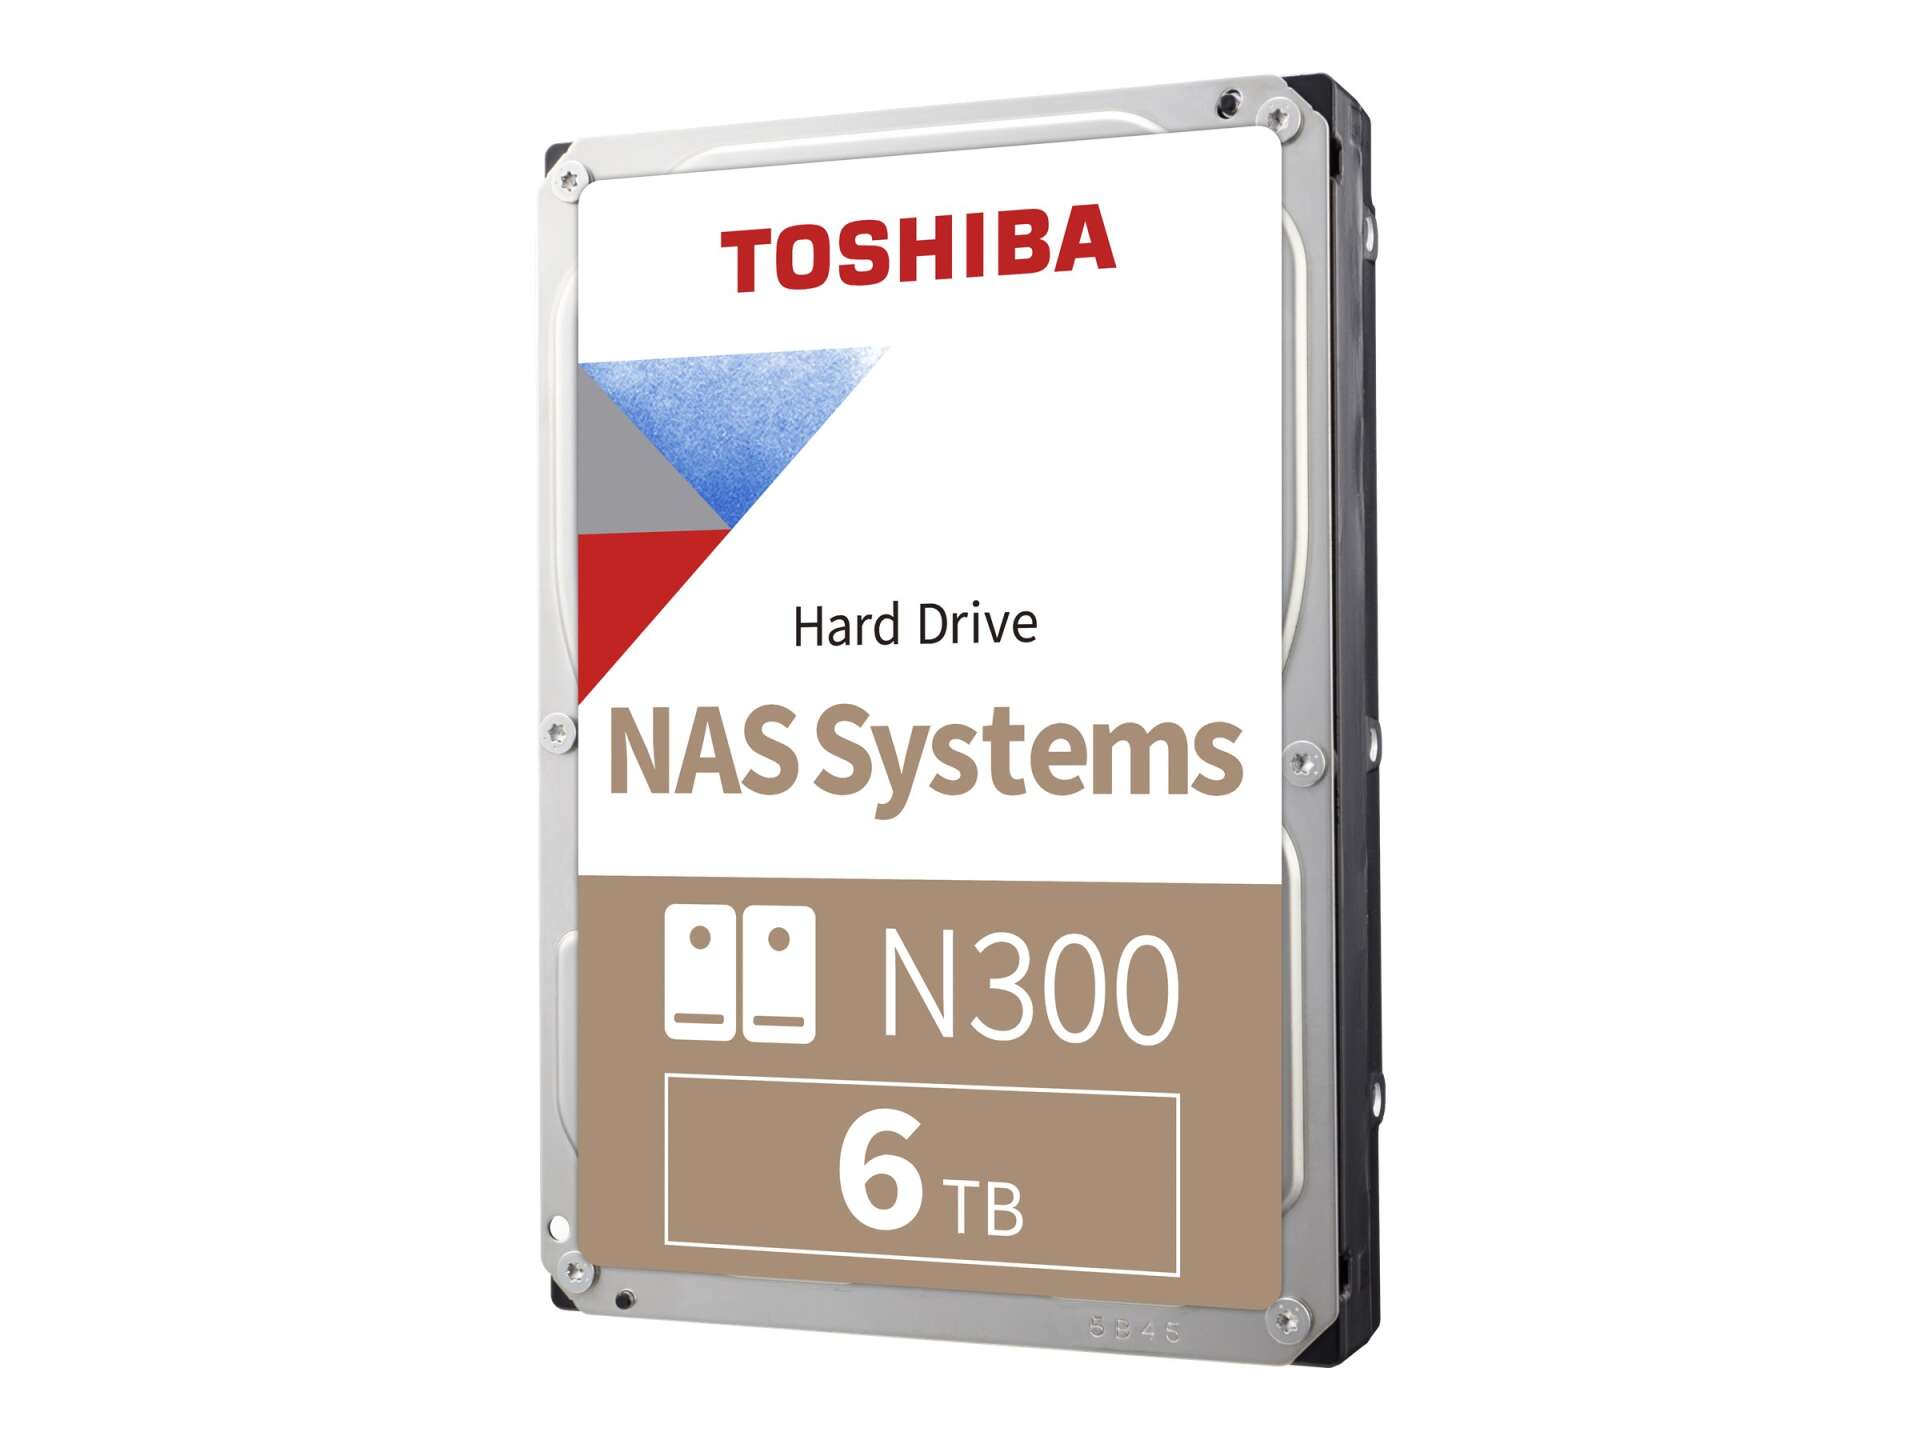 Toshiba n300 nas hdd 6tb 3.5 retail